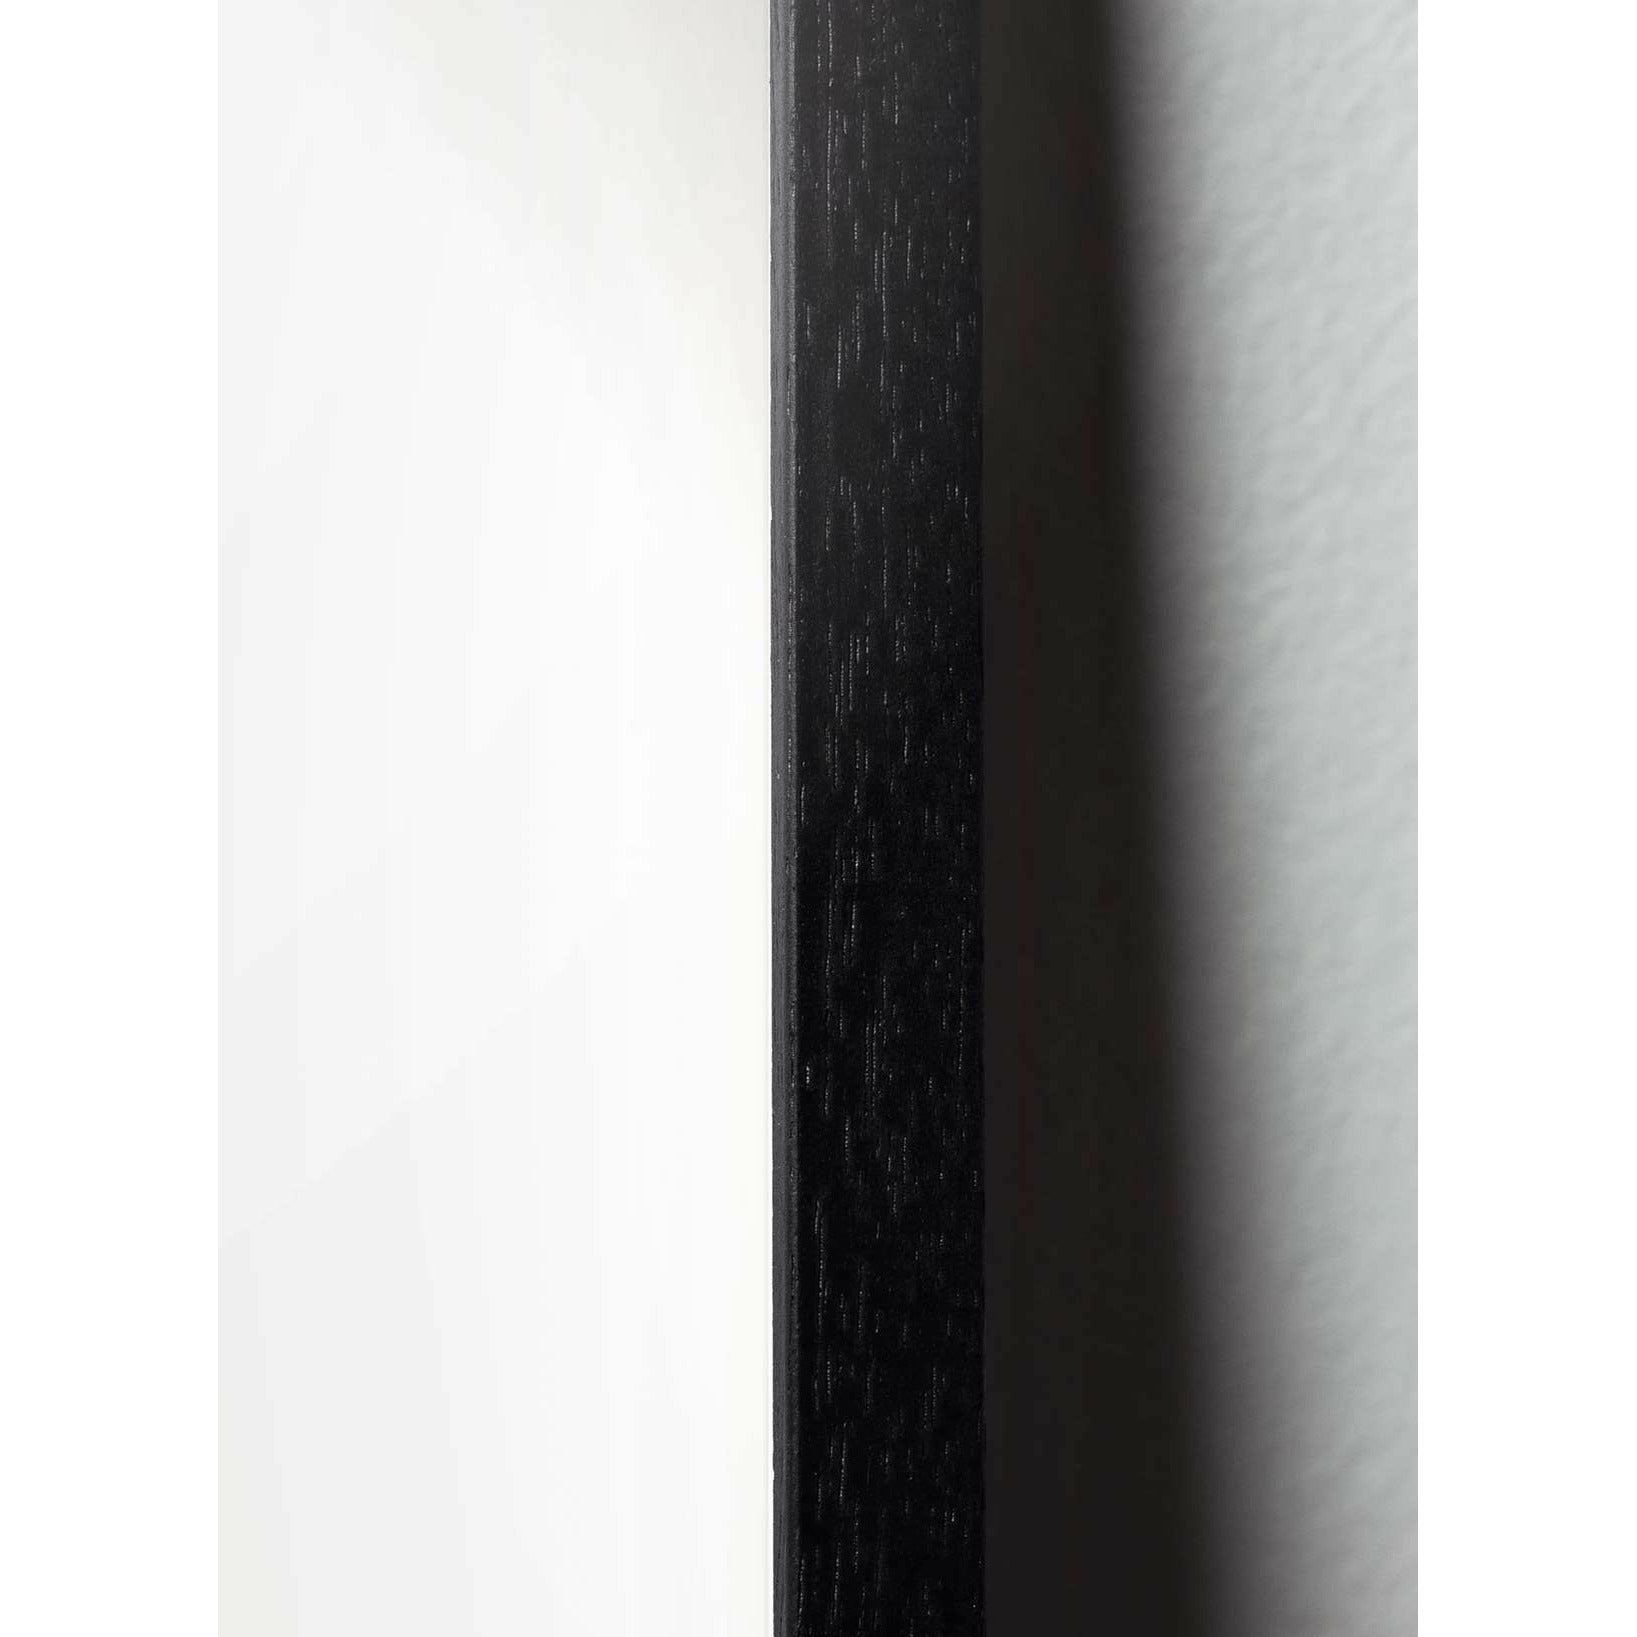 Hugarfóstur blómapott klassísk veggspjald, ramma í svörtum lakkaðri tré 50x70 cm, svartur bakgrunnur